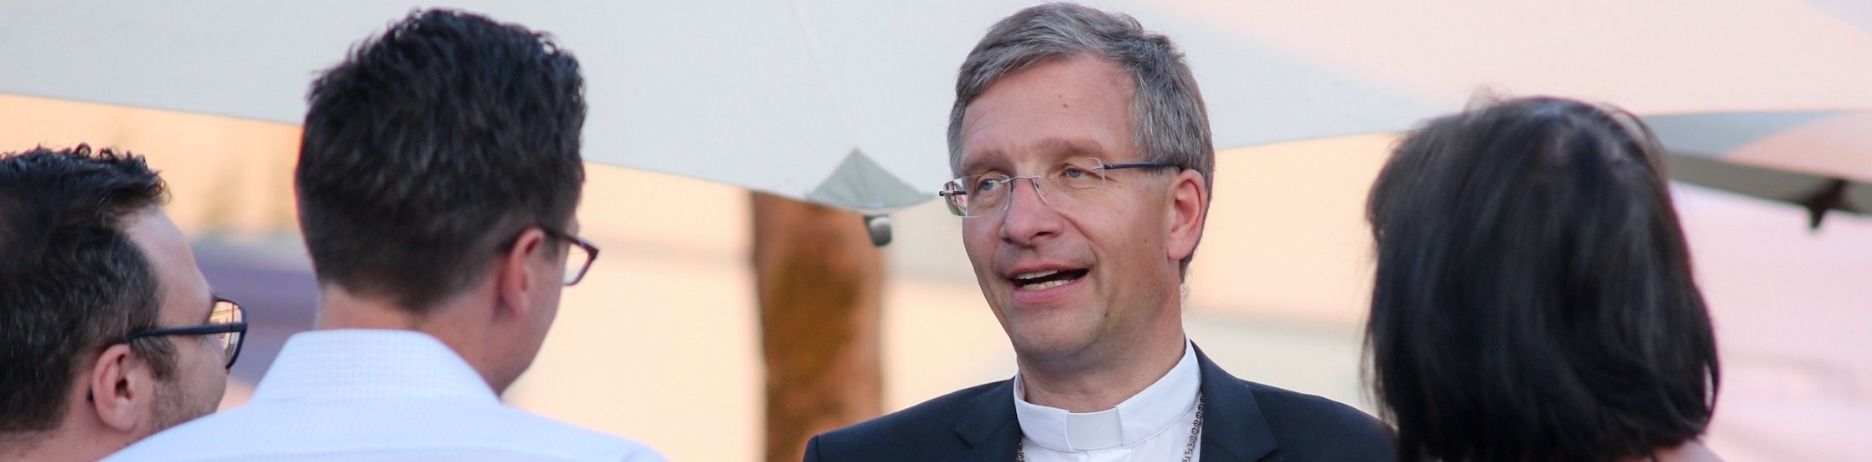 200 Jahre Landkreis Fulda: Bischof Gerber ruft zum gesellschaftlichen Zusammenhalt auf